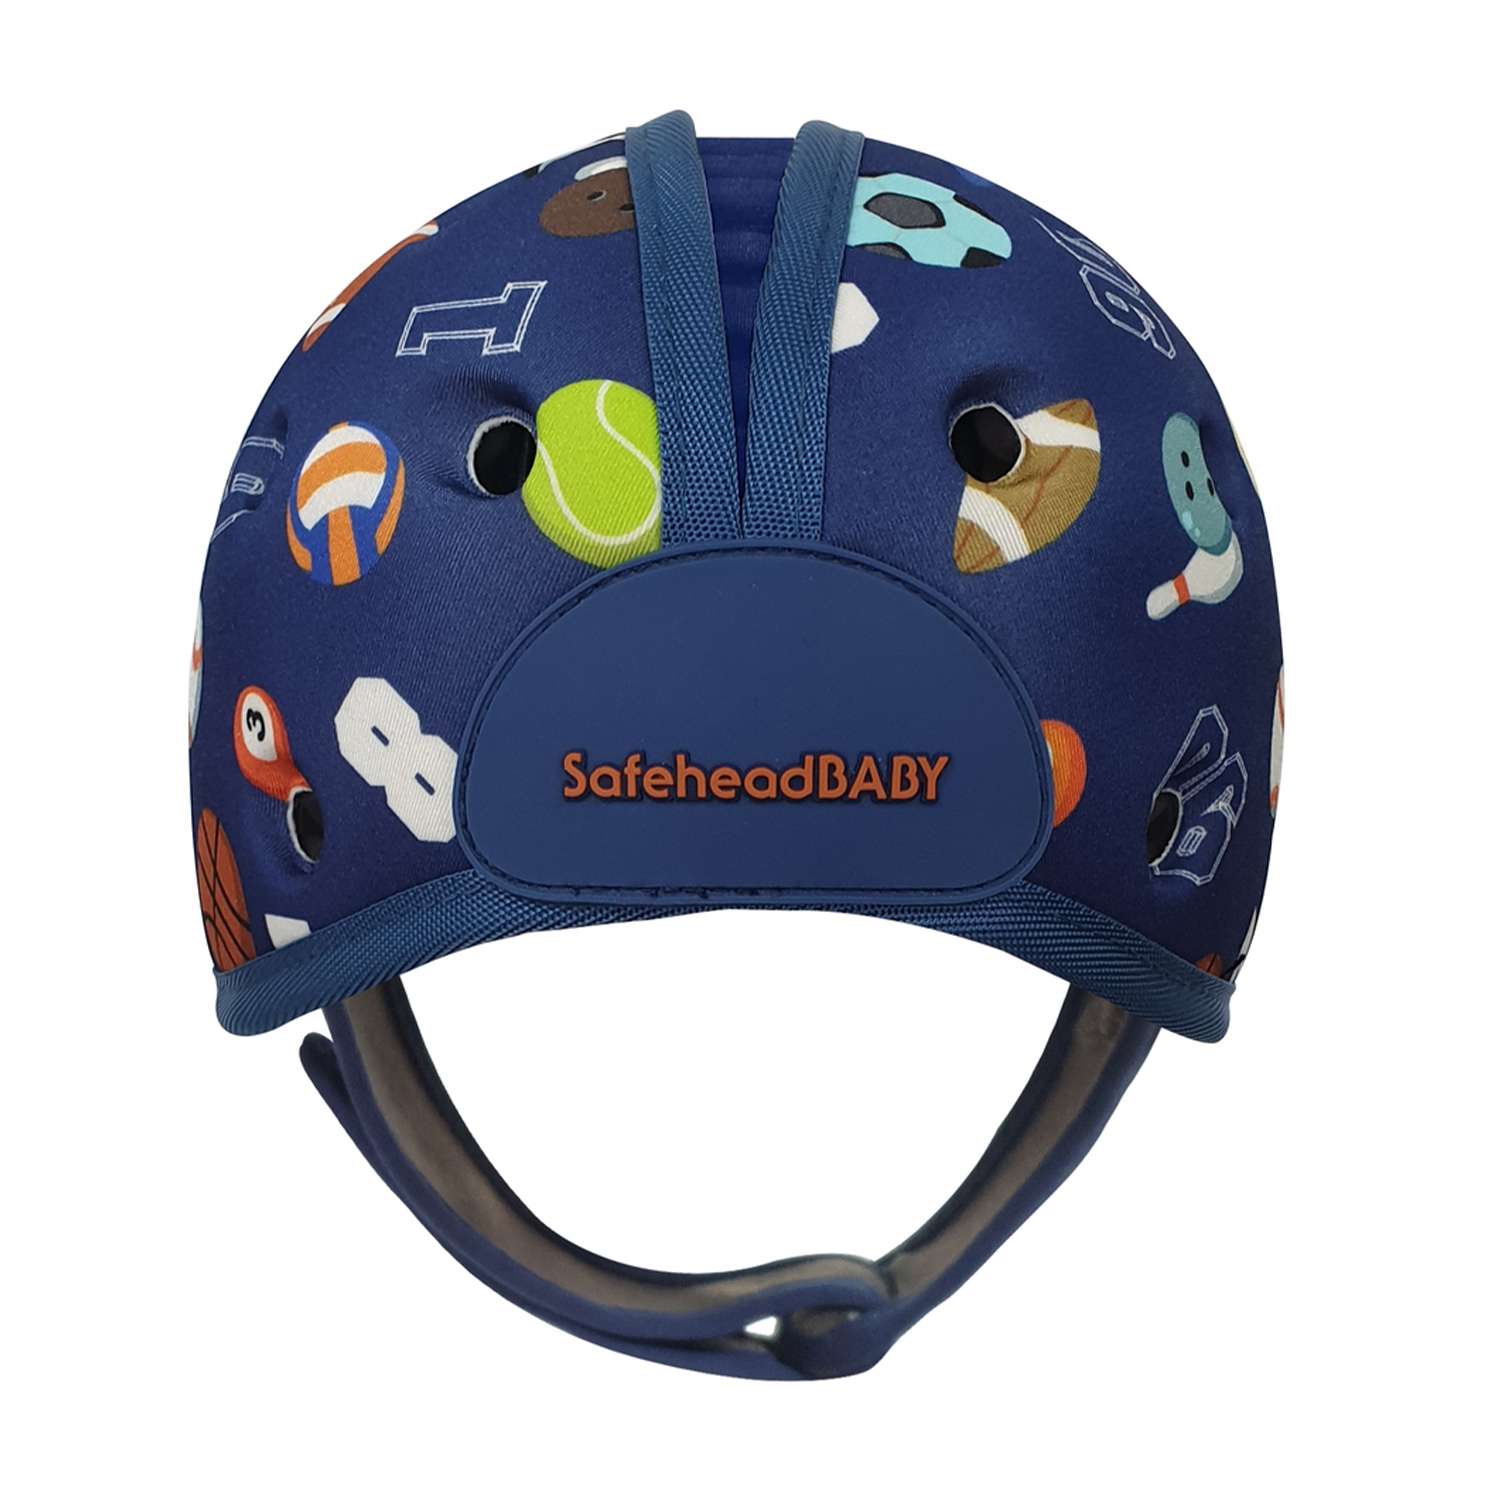 Шапка-шлем SafeheadBABY для защиты головы На спорте синий - фото 1